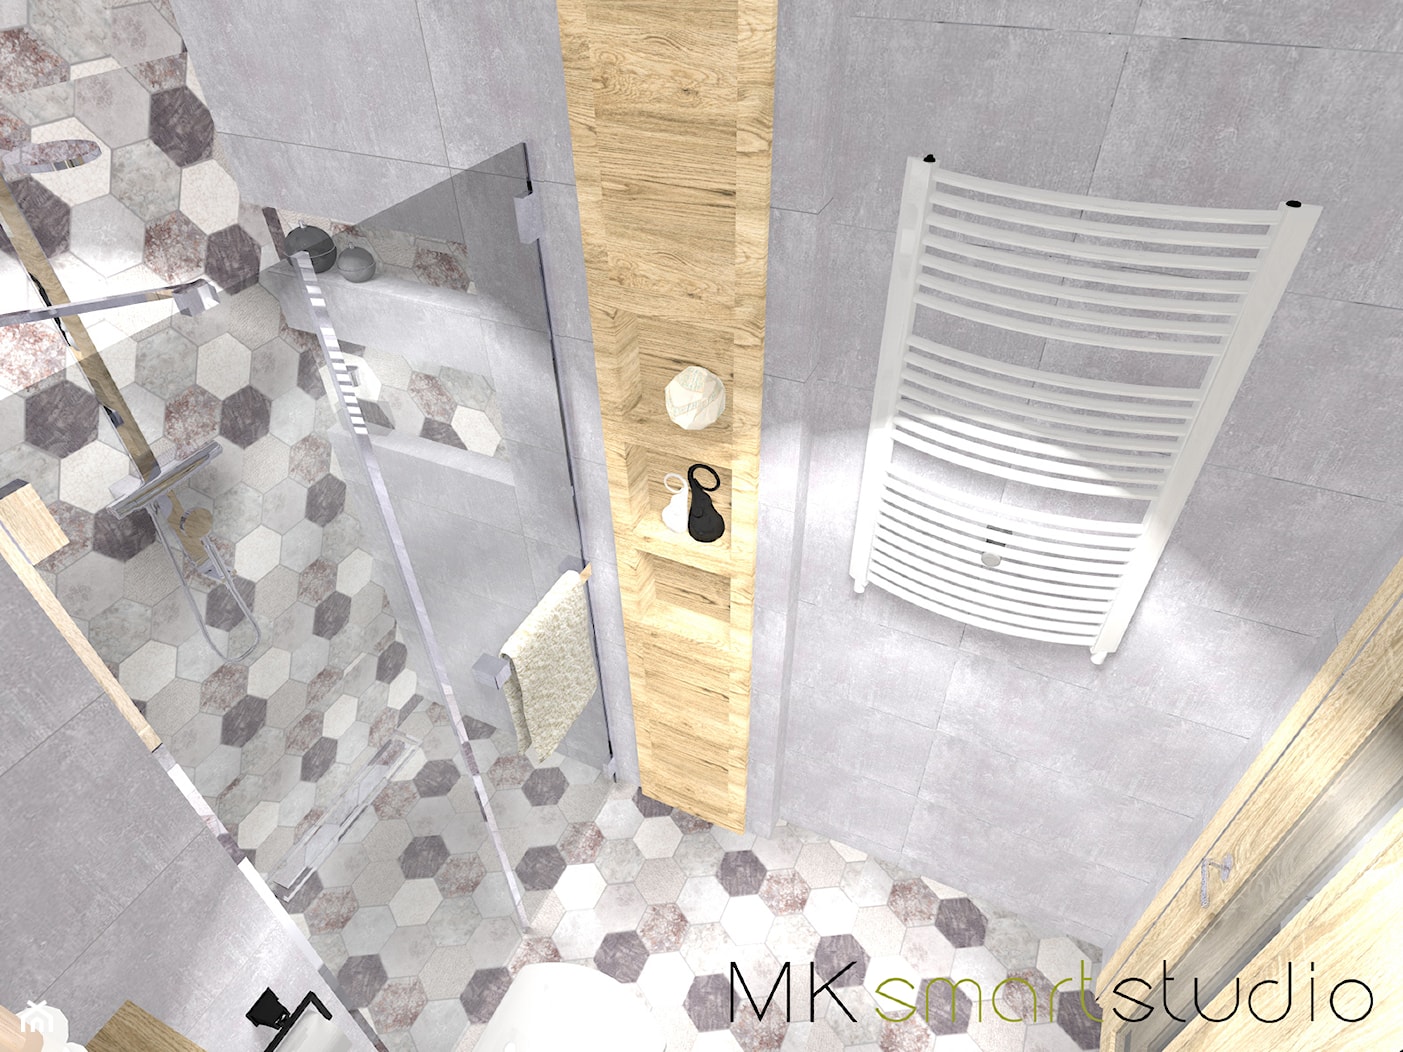 Nowoczesna szara łazienka z heksagonalnym dekorem firmy Geotiles kolekcja Obi - zdjęcie od MKsmartstudio - Homebook